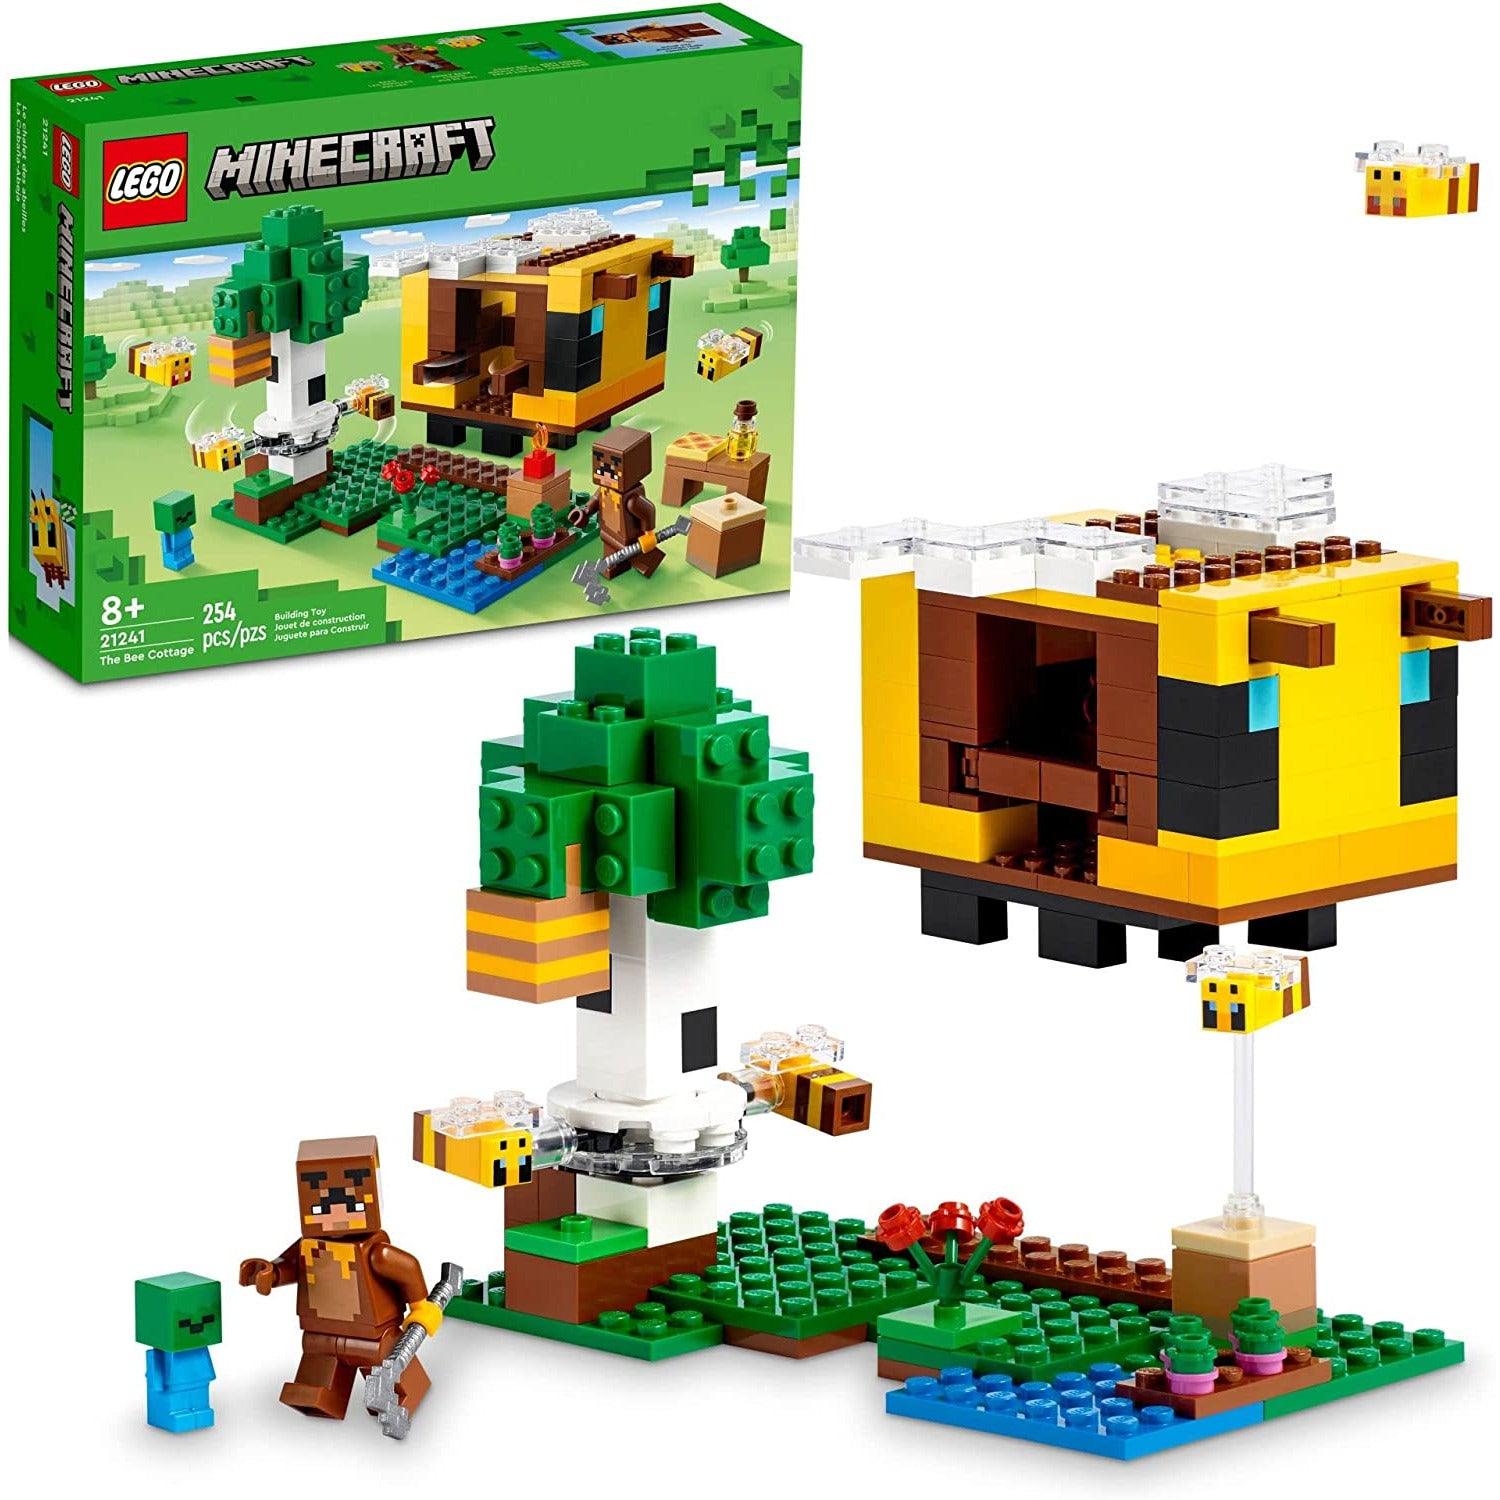 LEGO 21241 Minecraft The Bee Cottage ، لعبة بناء مع منزل قابل للبناء ، مزرعة ، زومبي للأطفال وشخصيات حيوانات